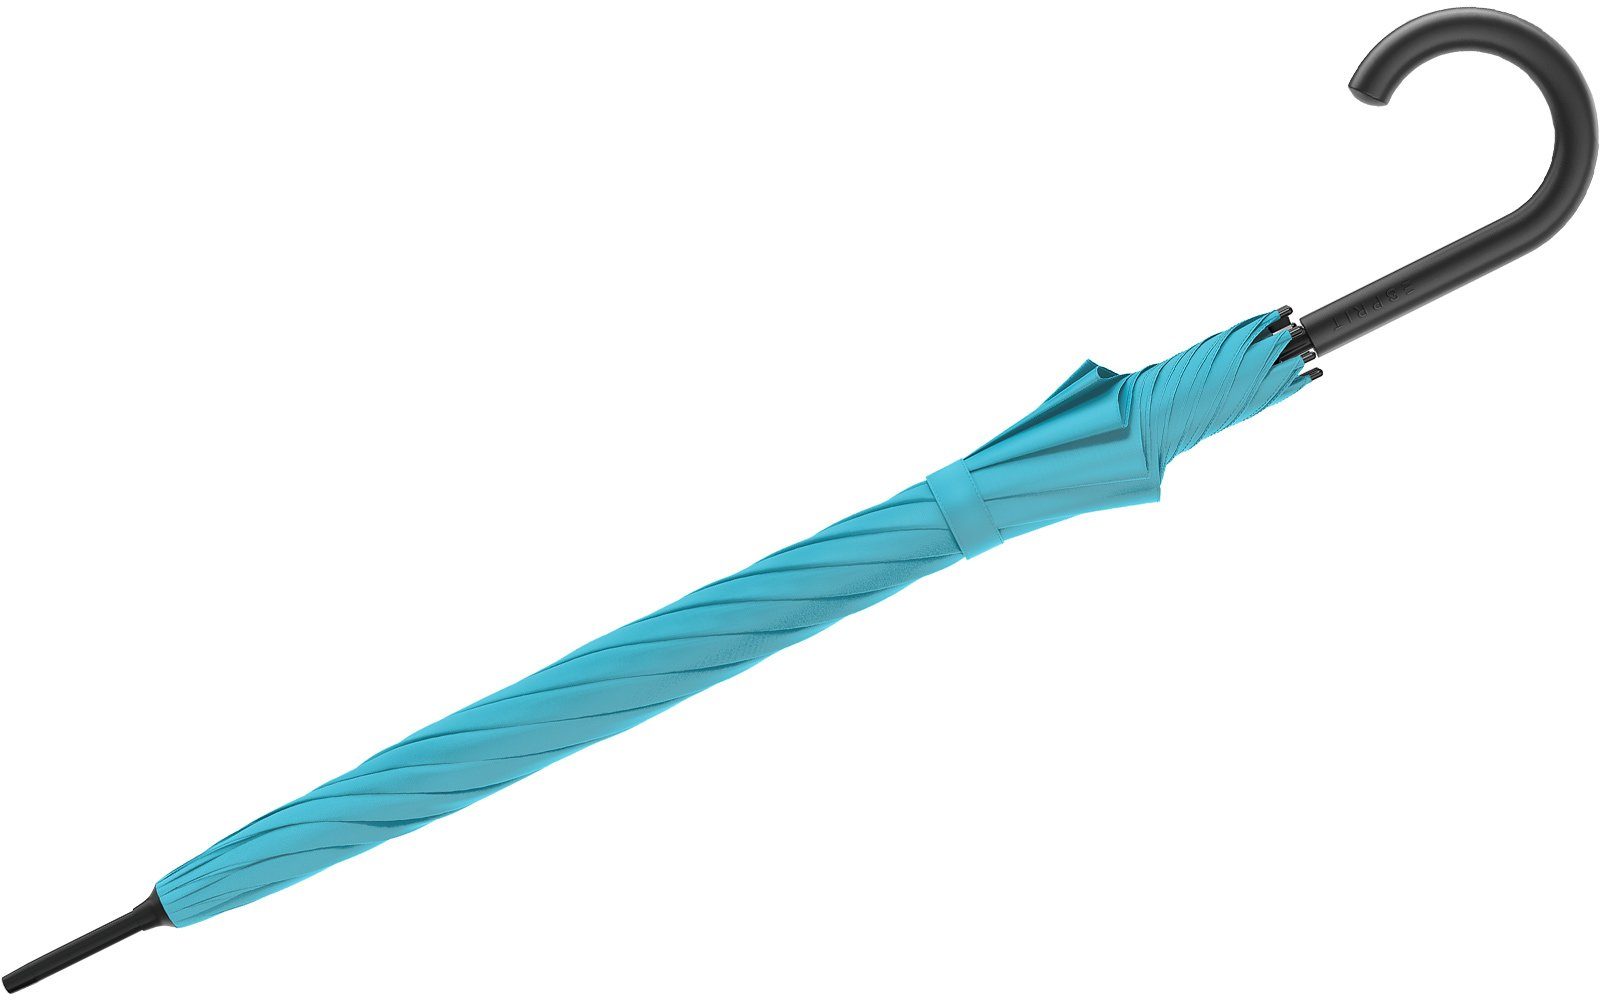 FJ Langregenschirm und groß Esprit in Trendfarben 2023, Automatik stabil, Damen-Regenschirm den blau mit